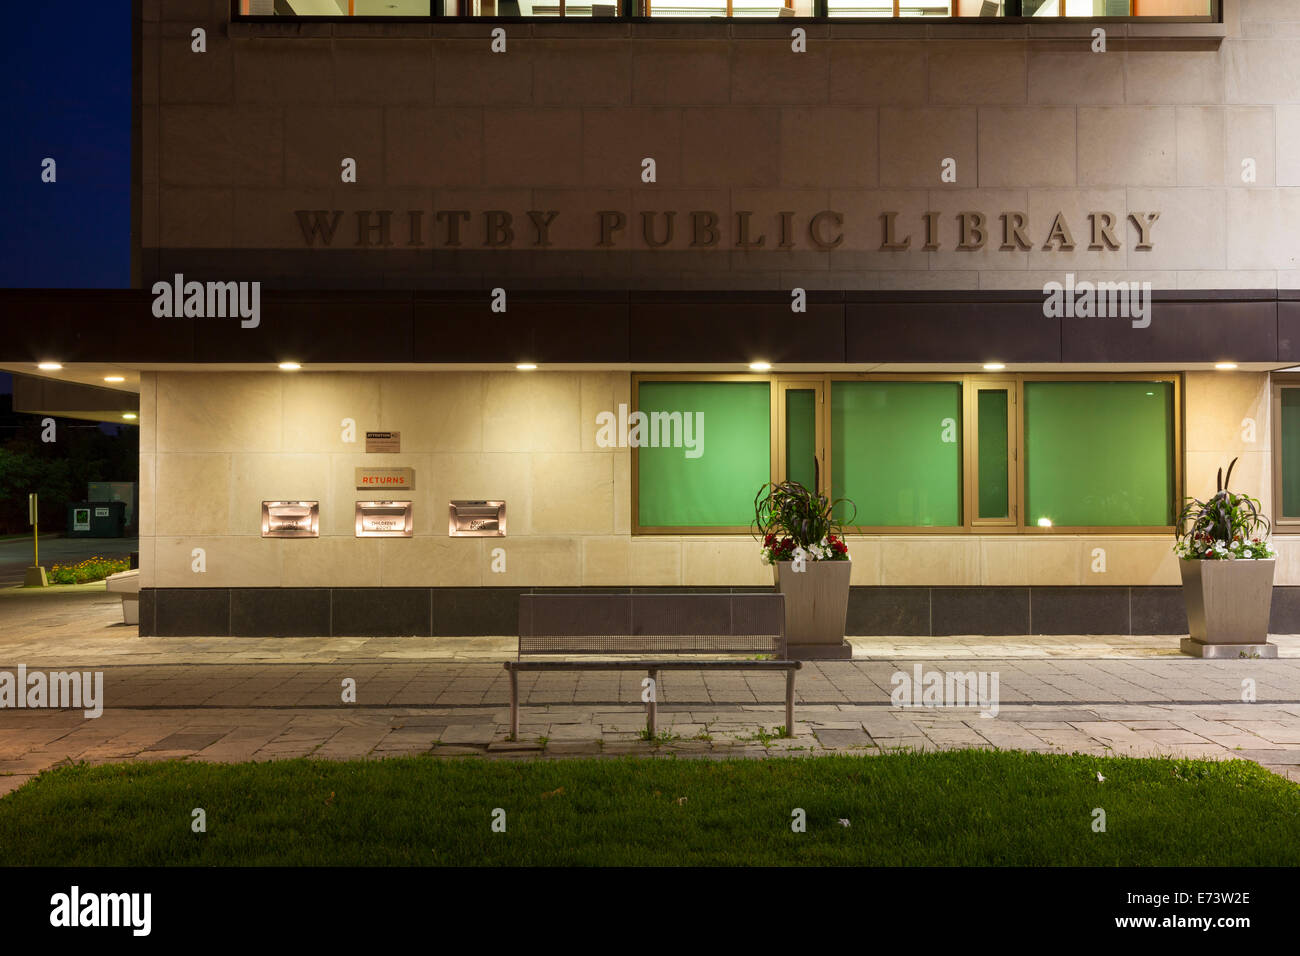 Un ingresso per la 'Whitby biblioteca pubblica' compresi segnaletica nel centro cittadino di Whitby, Ontario, Canada. Foto Stock